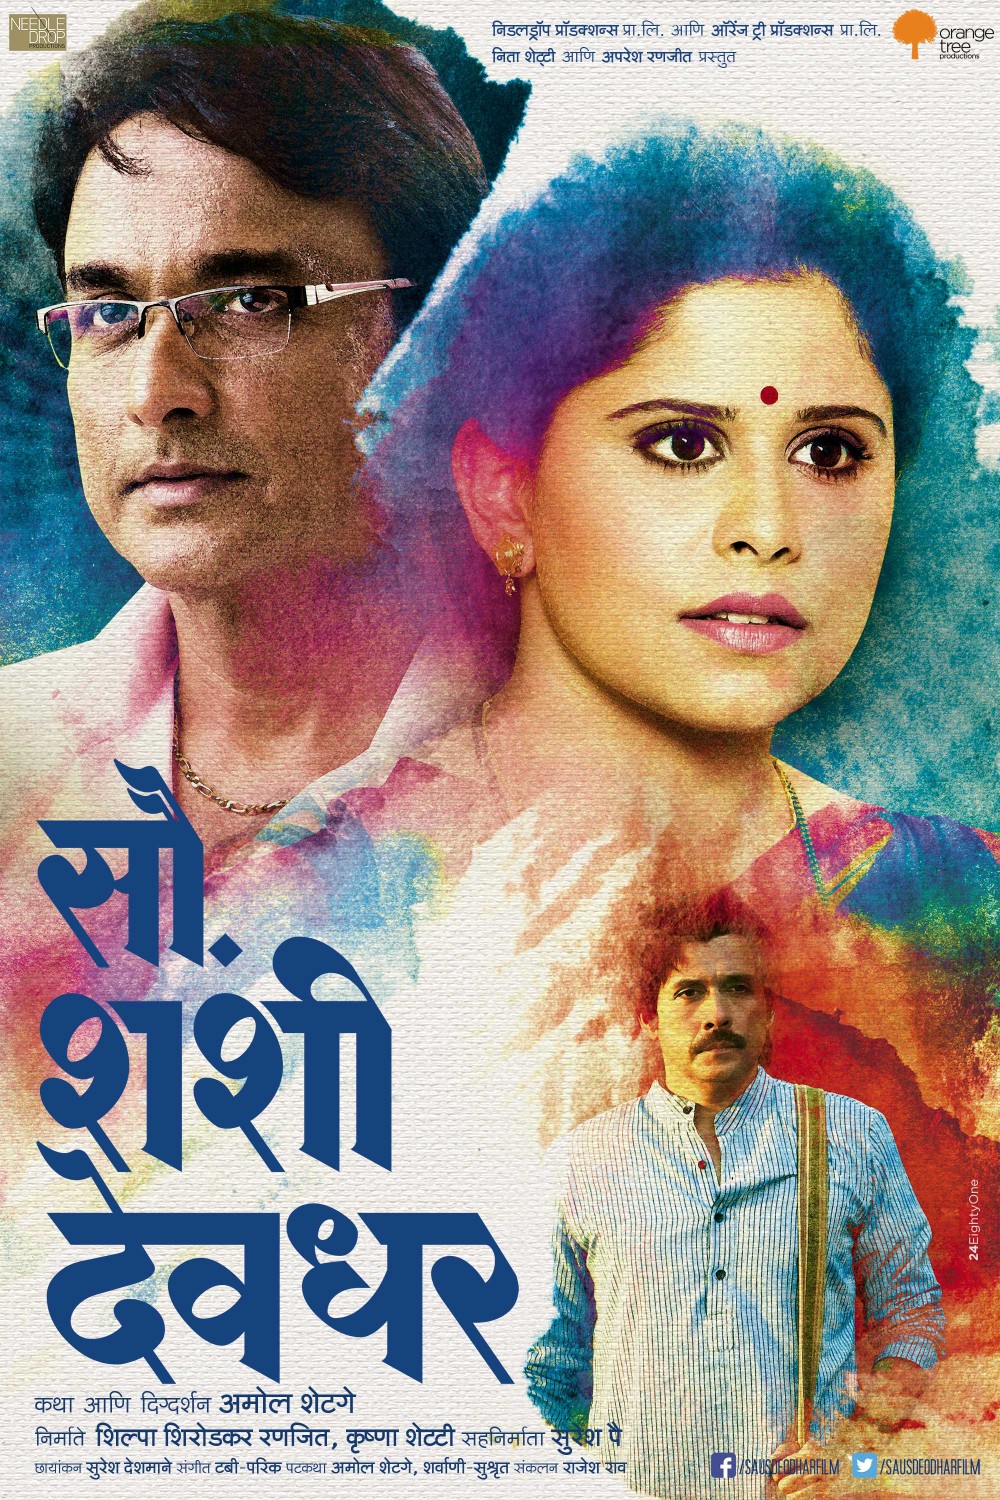 Extra Large Movie Poster Image for Sau. Shashi Deodhar (#7 of 7)